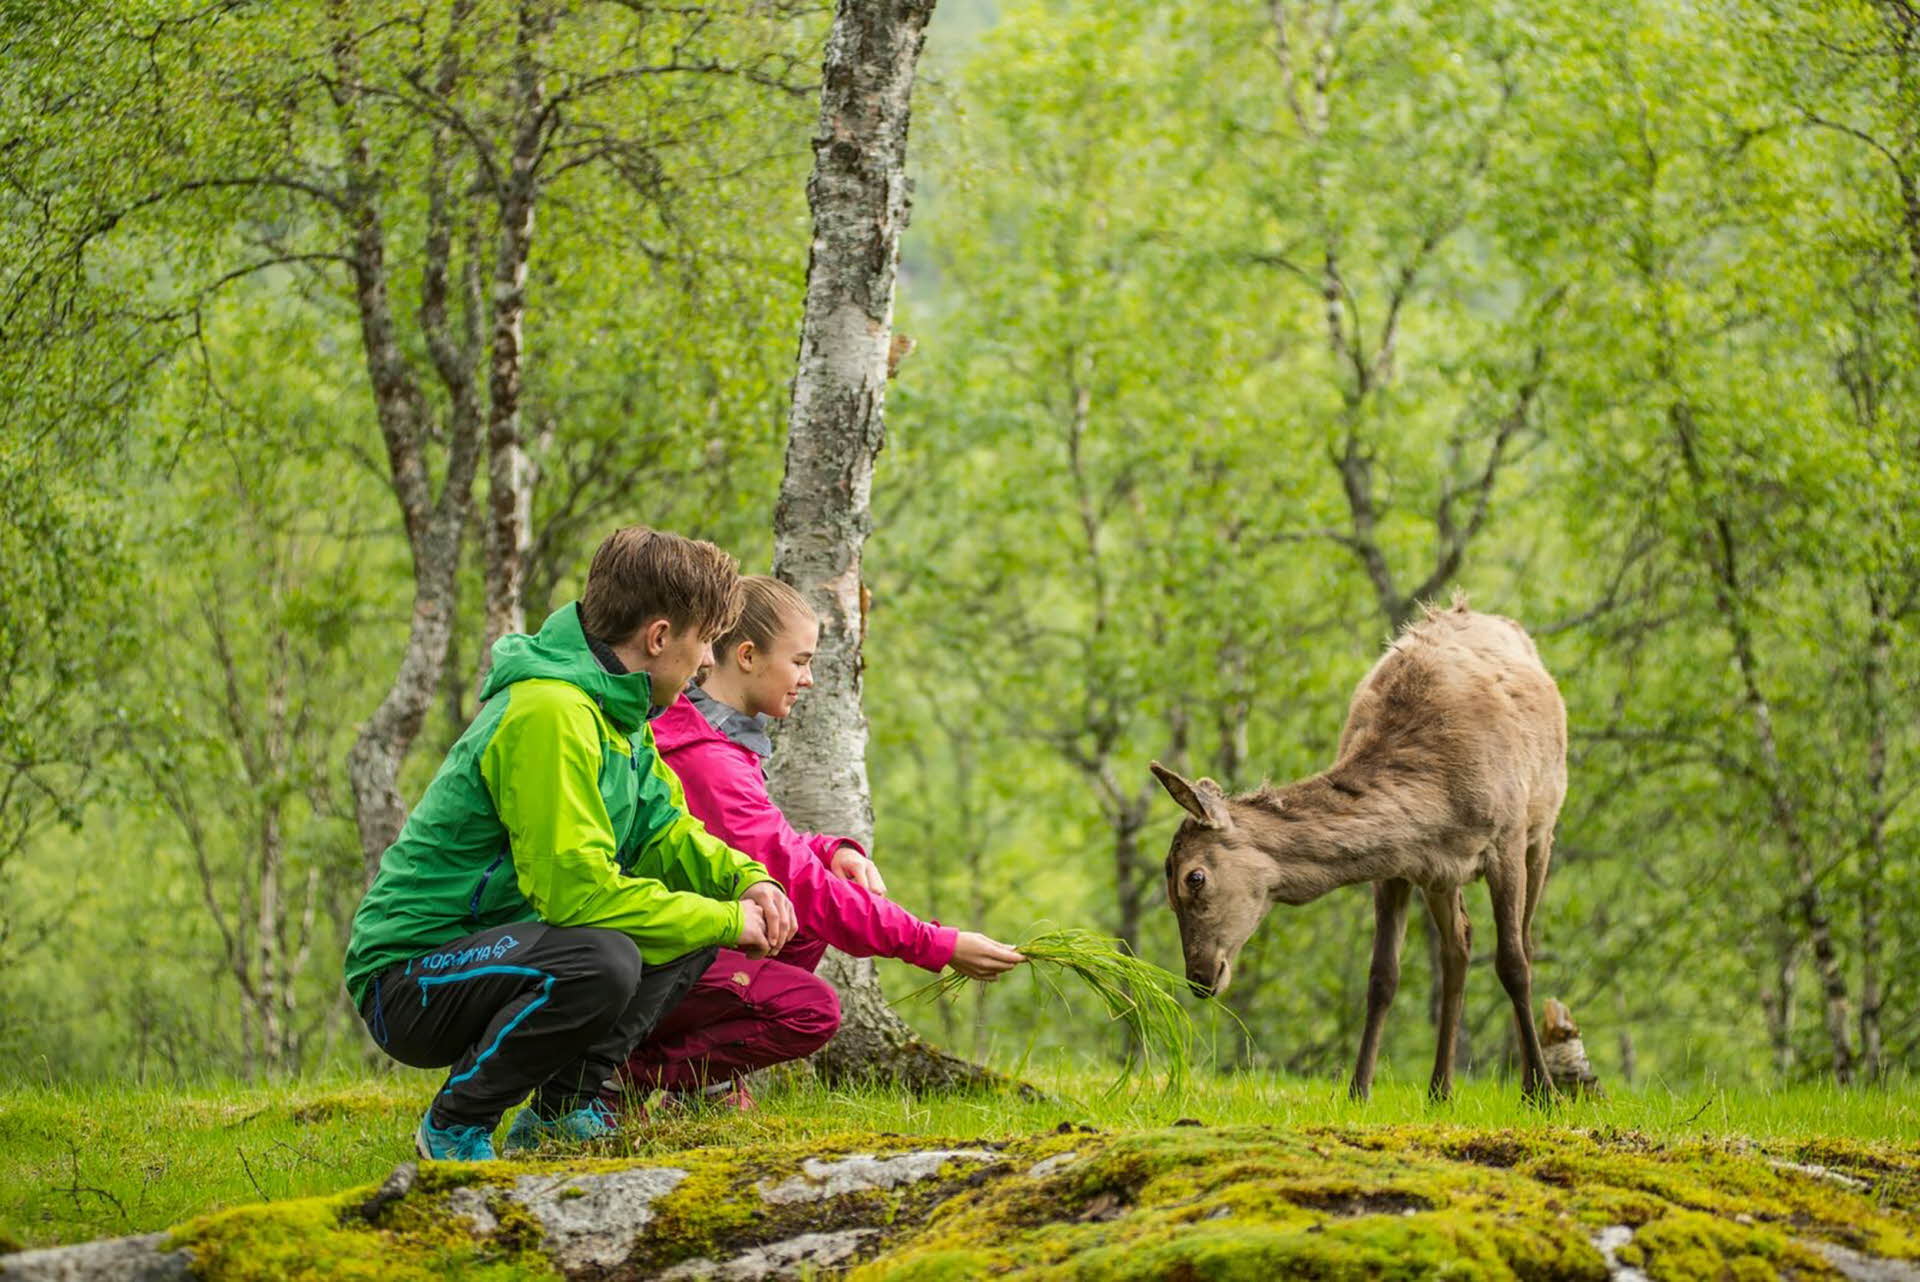 Un chico y una chica con chaquetas verde y rosa sentados junto a un ciervo en un bosque verde.